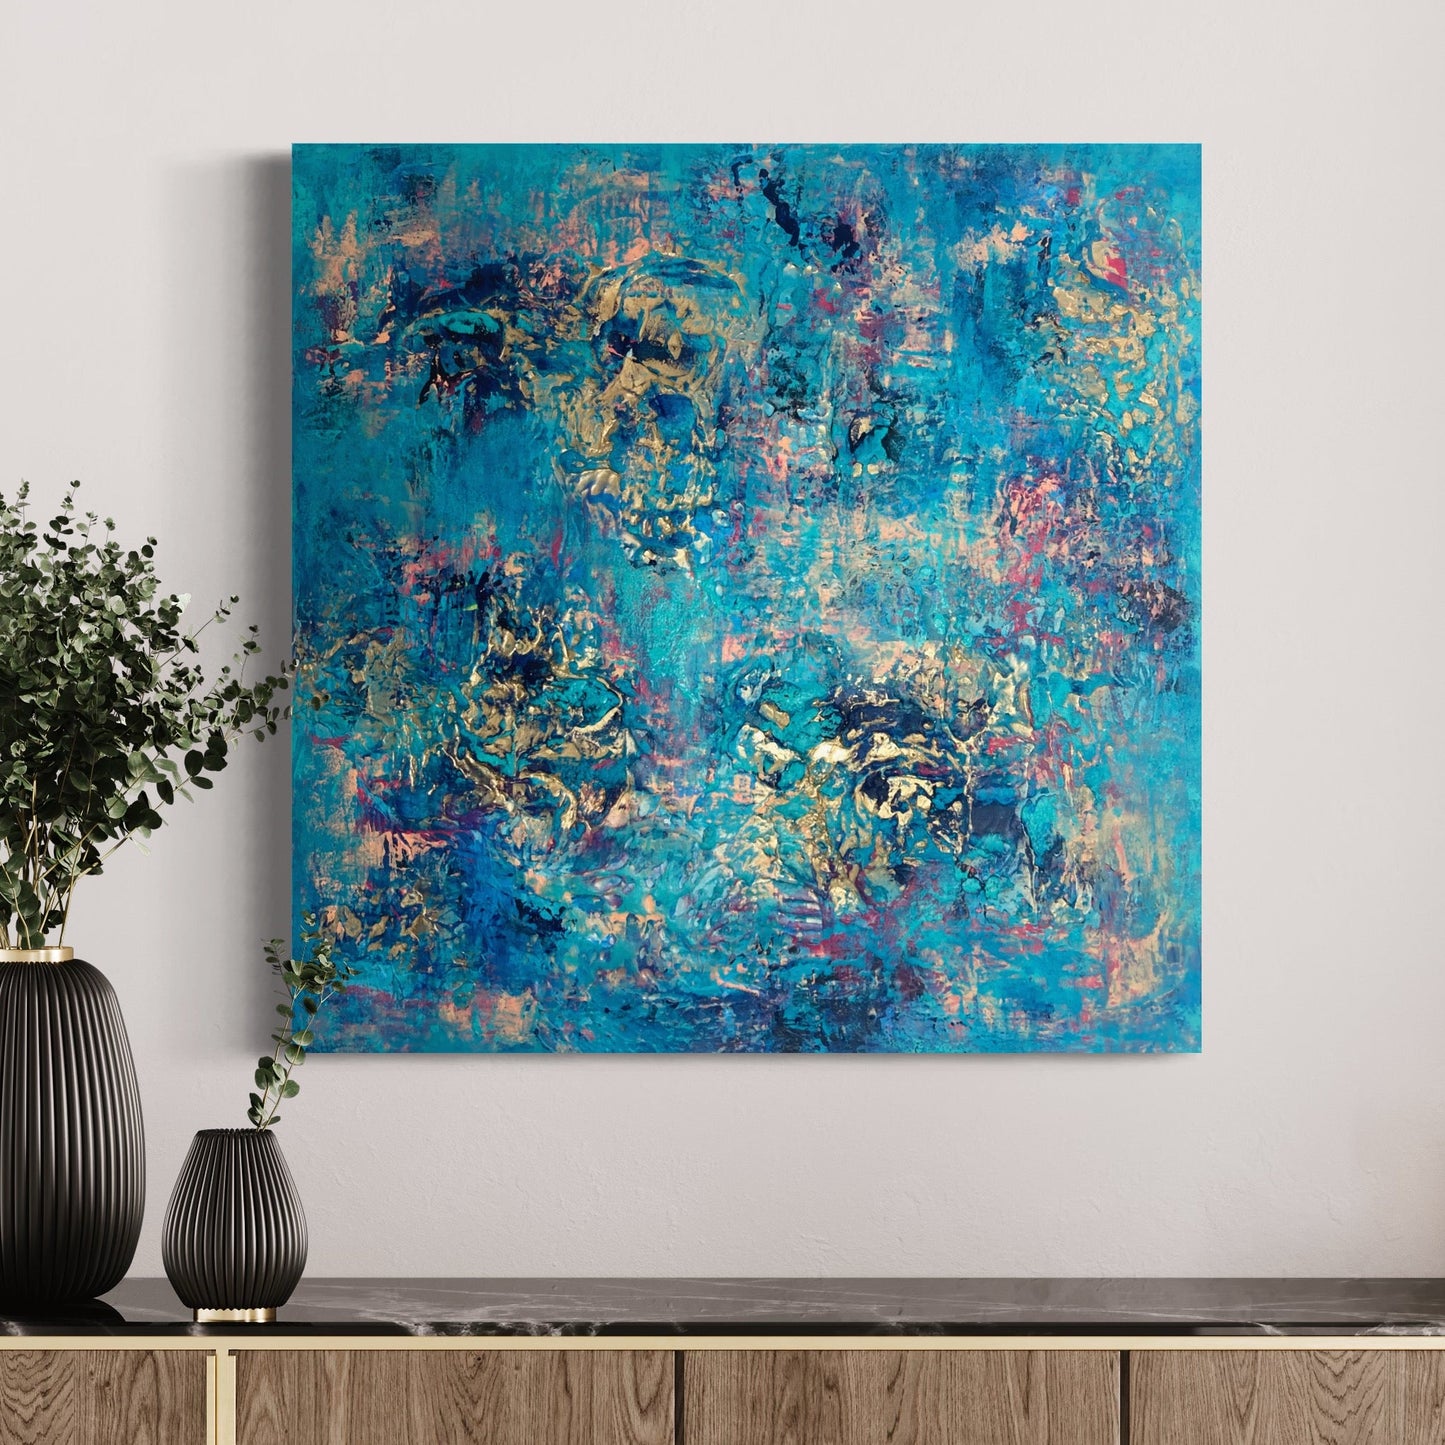 Kunstwerk kaufen | Blue Monday 80x80 cm-unikate-kaufen-sabine-runge-münchen